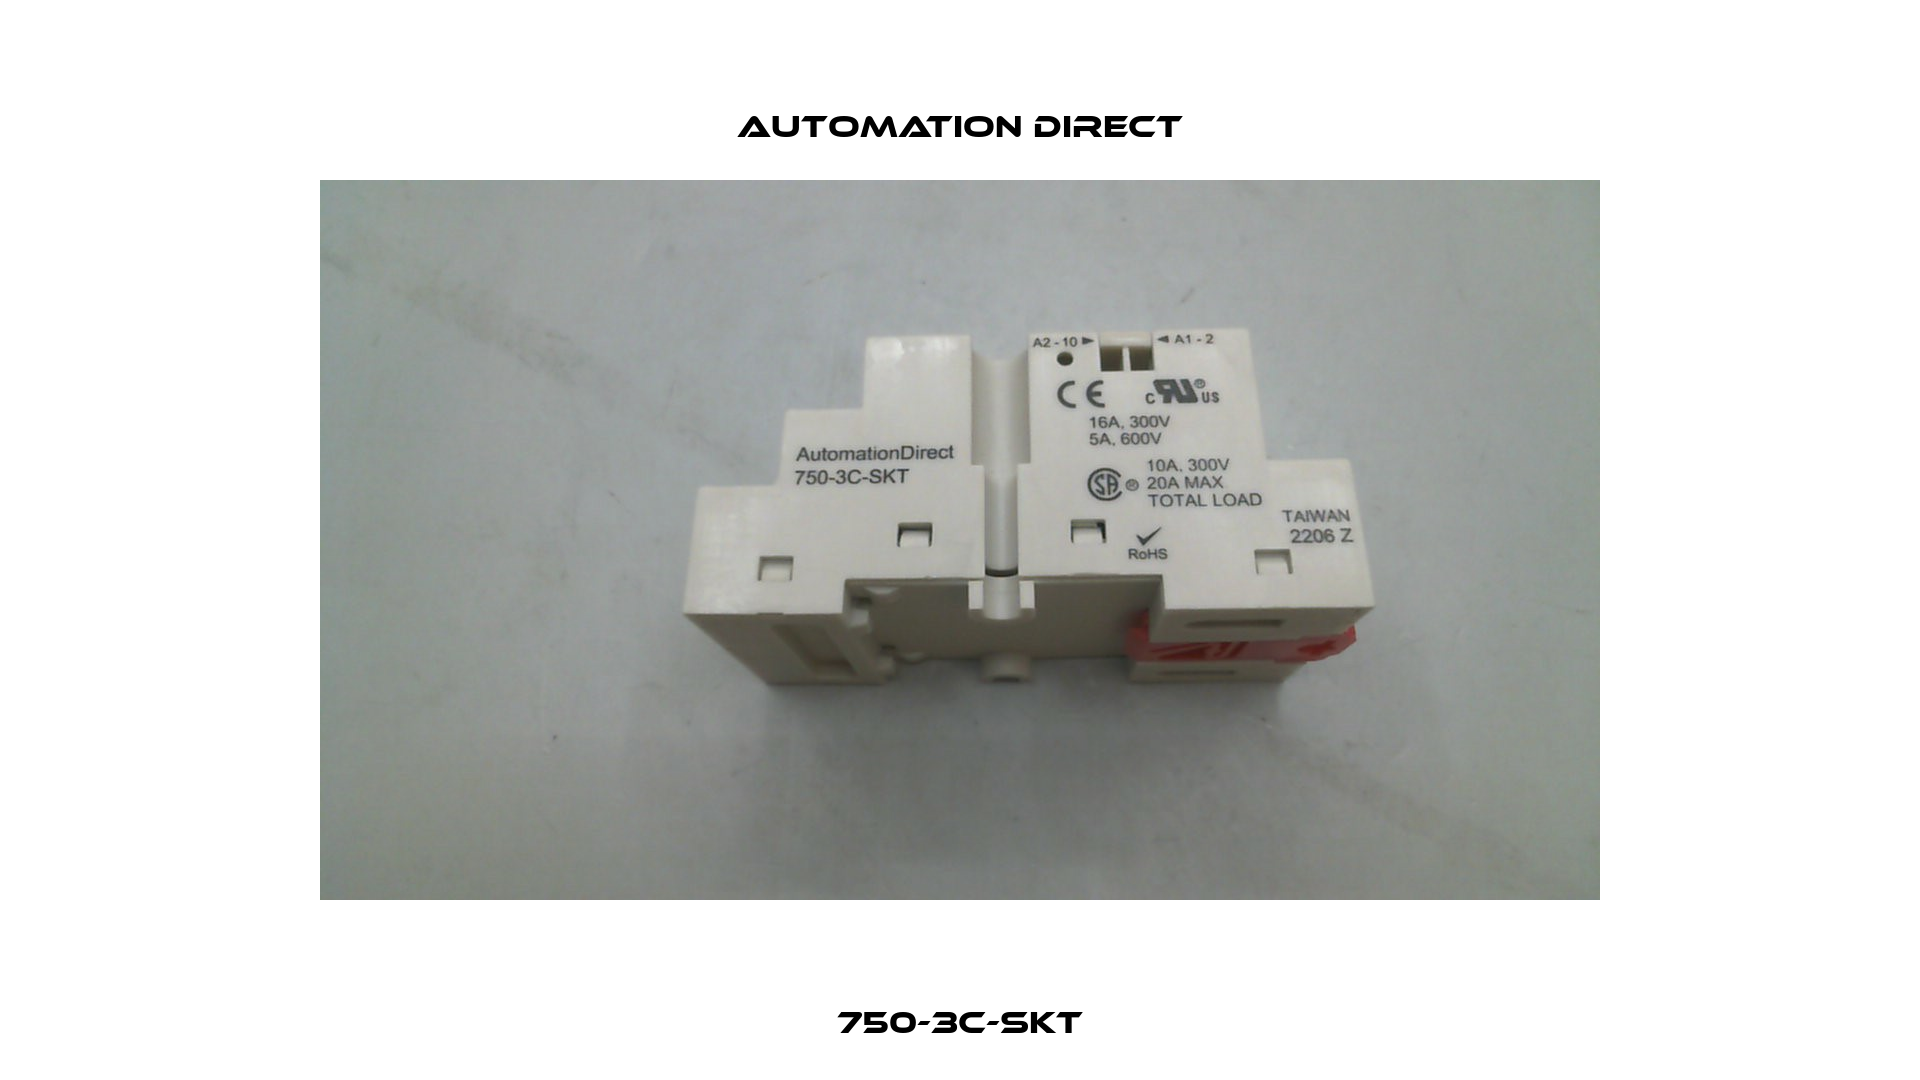 750-3C-SKT Automation Direct